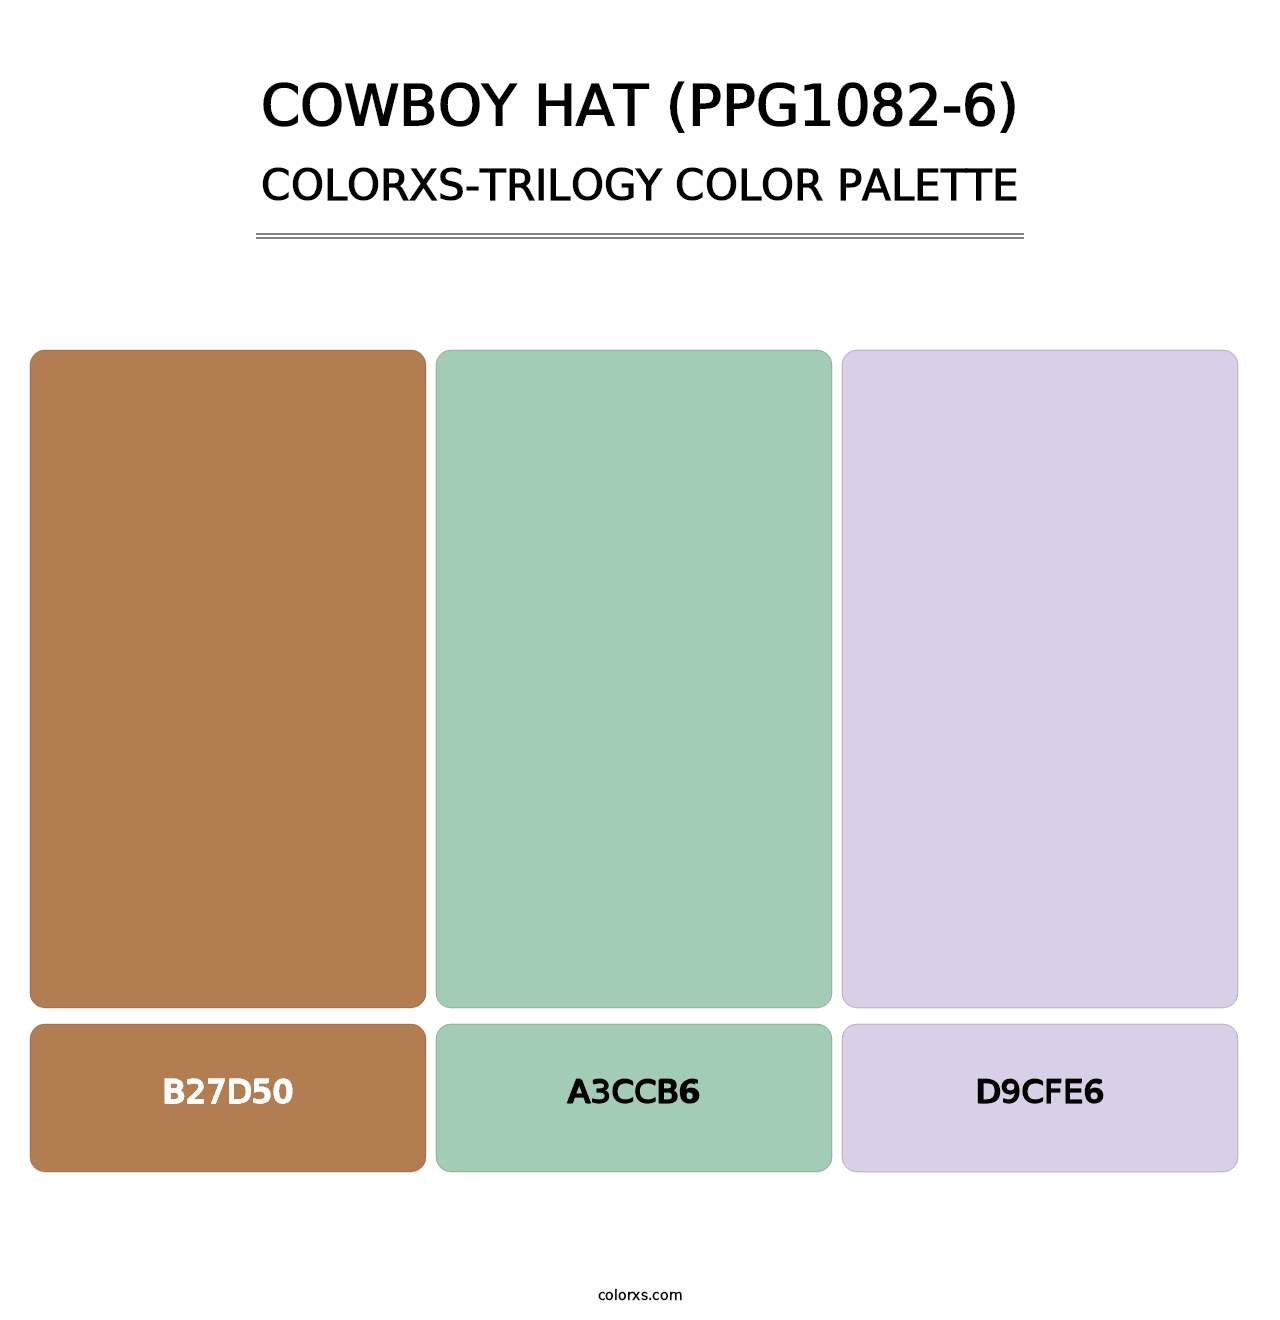 Cowboy Hat (PPG1082-6) - Colorxs Trilogy Palette